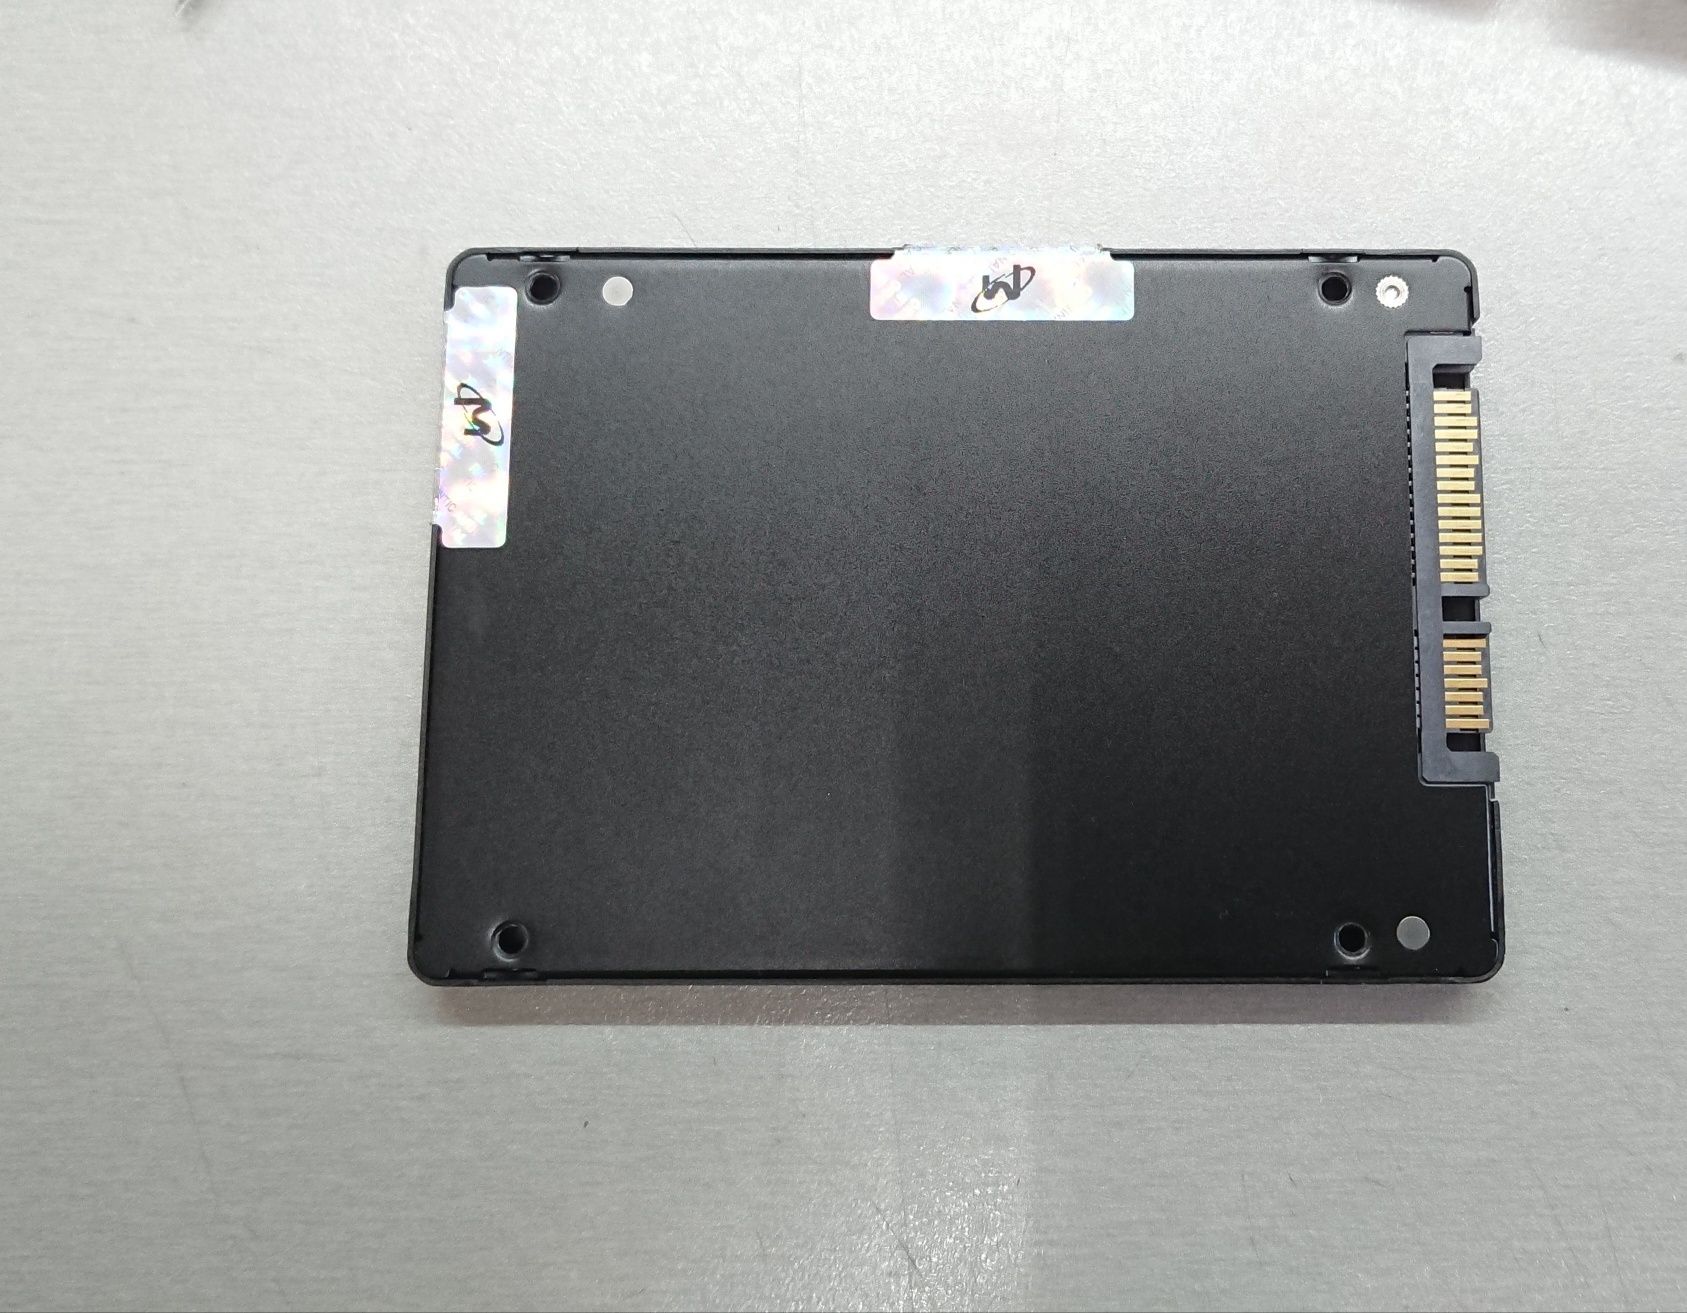 Micron 5300 Pro - SSD Накопитель ДЛЯ СЕРВЕРА 480GB SATA 6GB/S. 2.5"